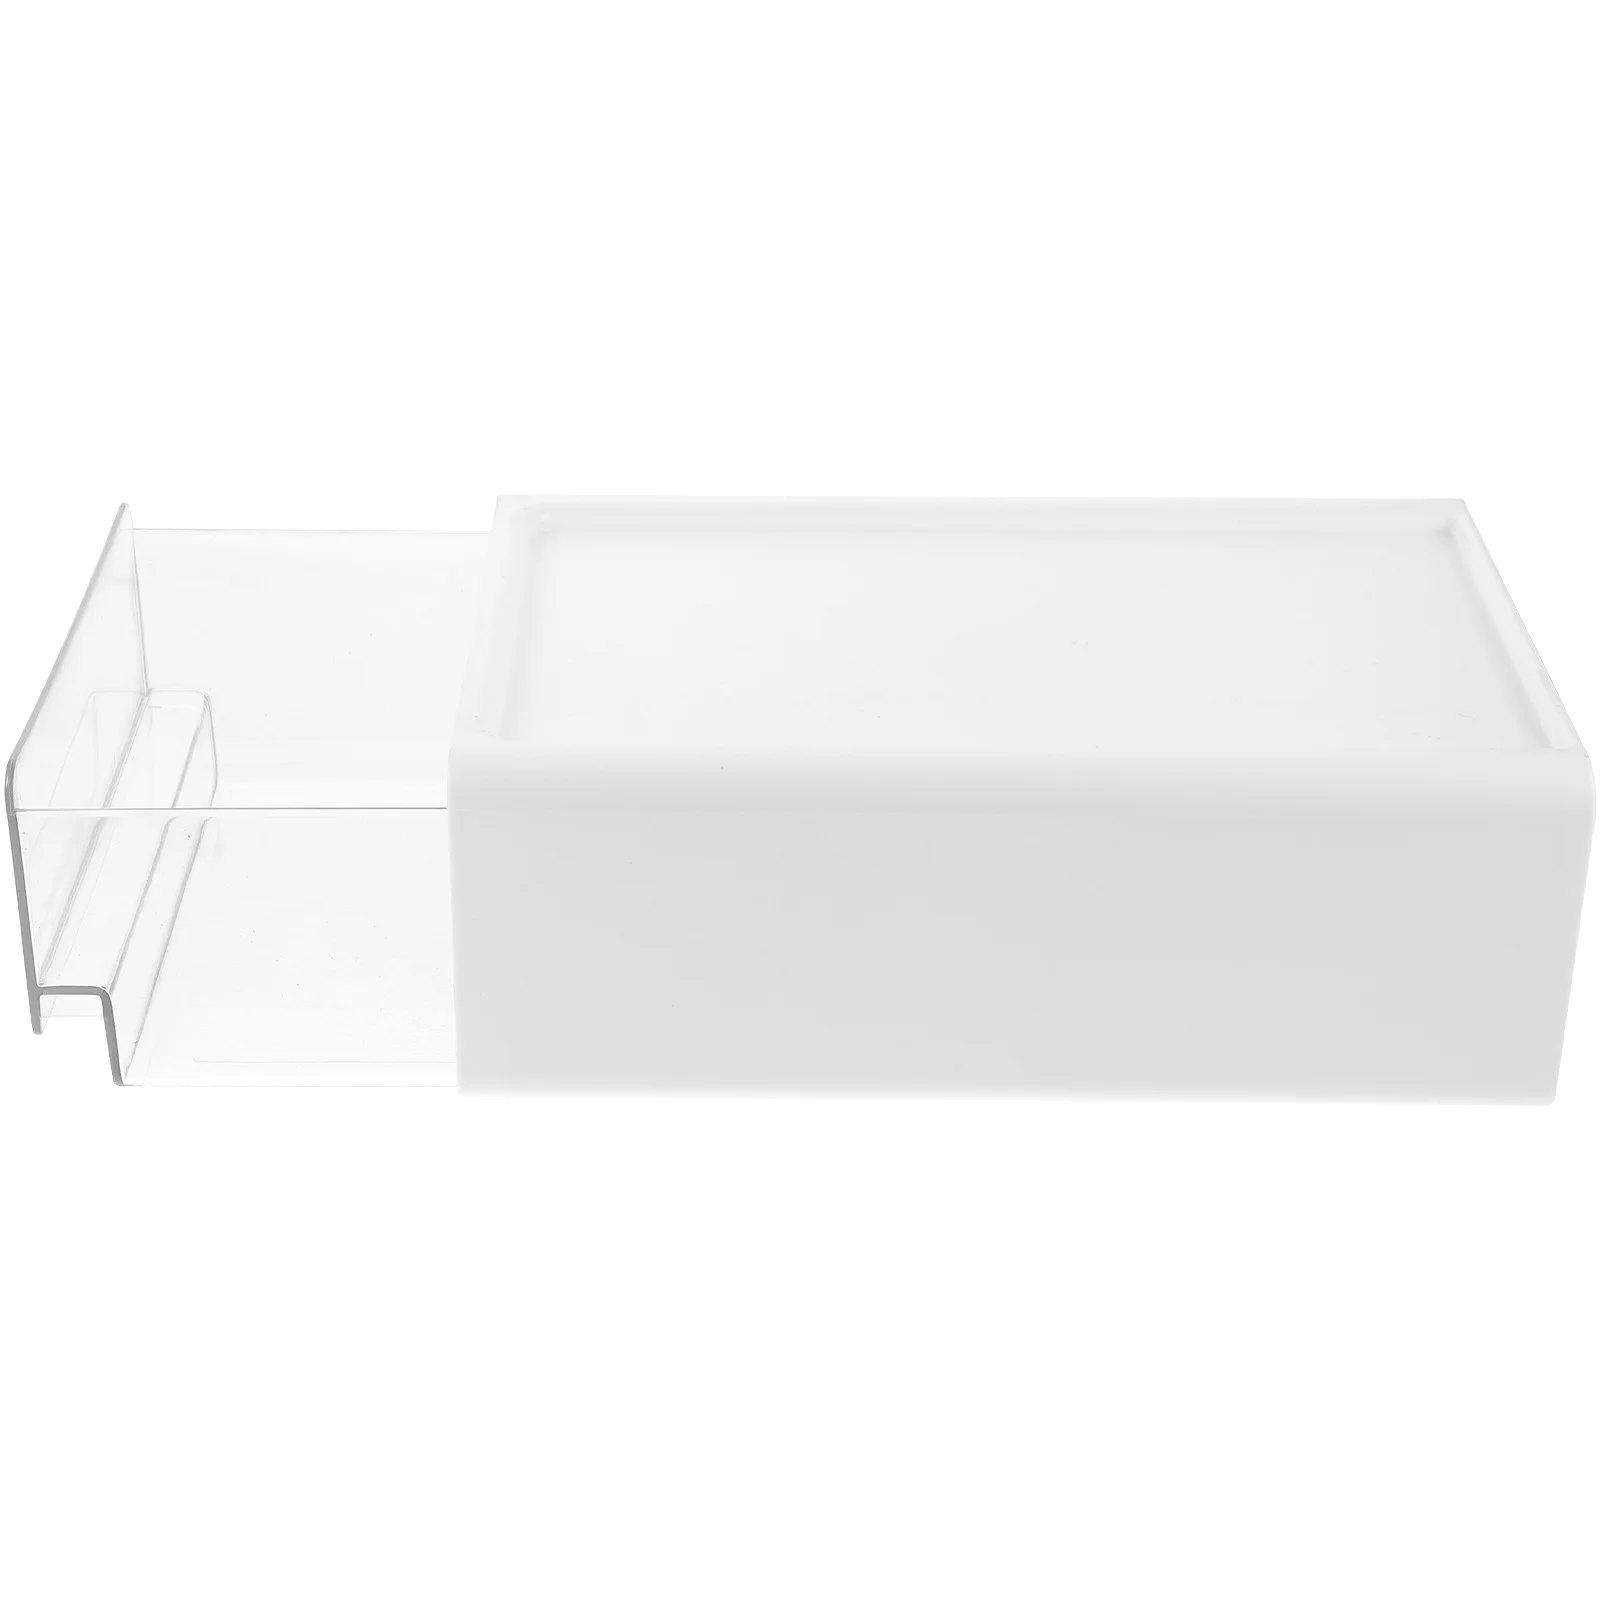 Настольный ящик для хранения Выдвижных ящиков Органайзер Кронштейн для ванной Комнаты Стеклянные шкафы Столик Маленький для